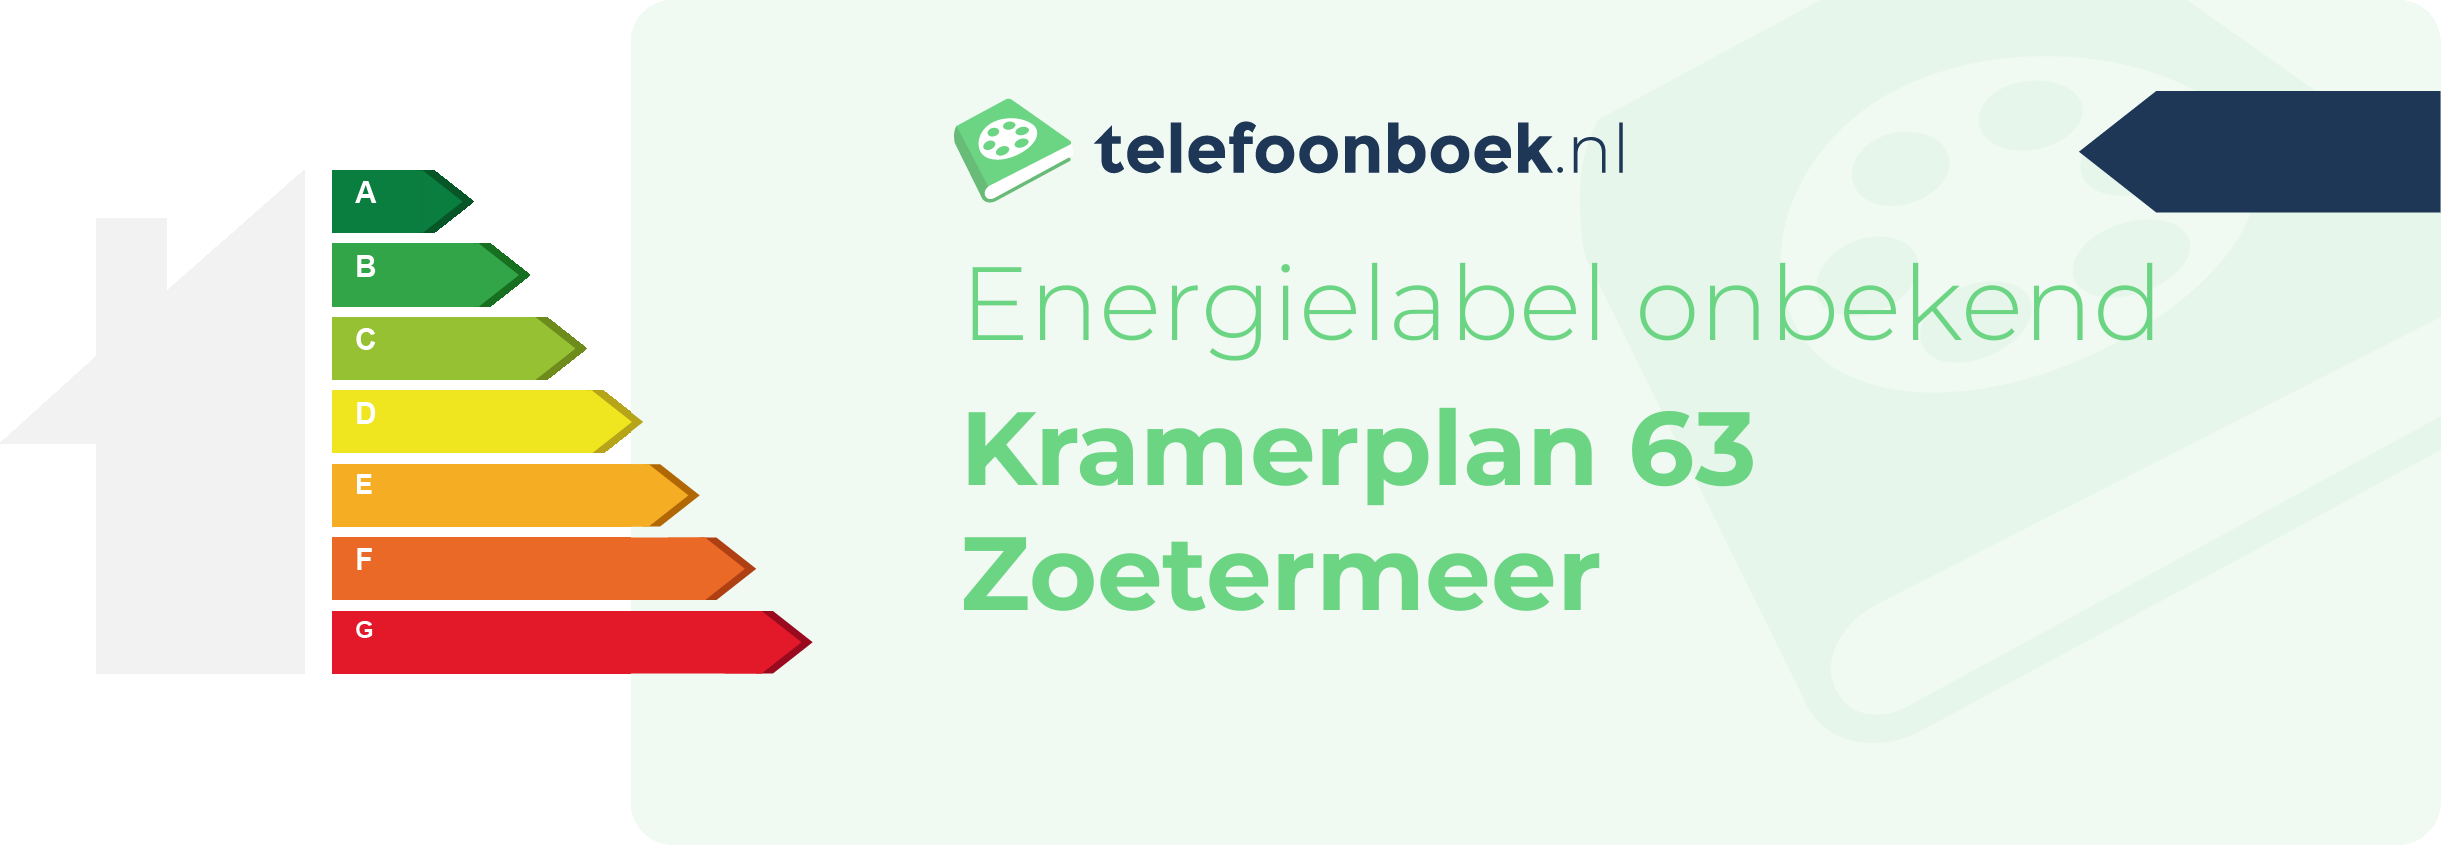 Energielabel Kramerplan 63 Zoetermeer